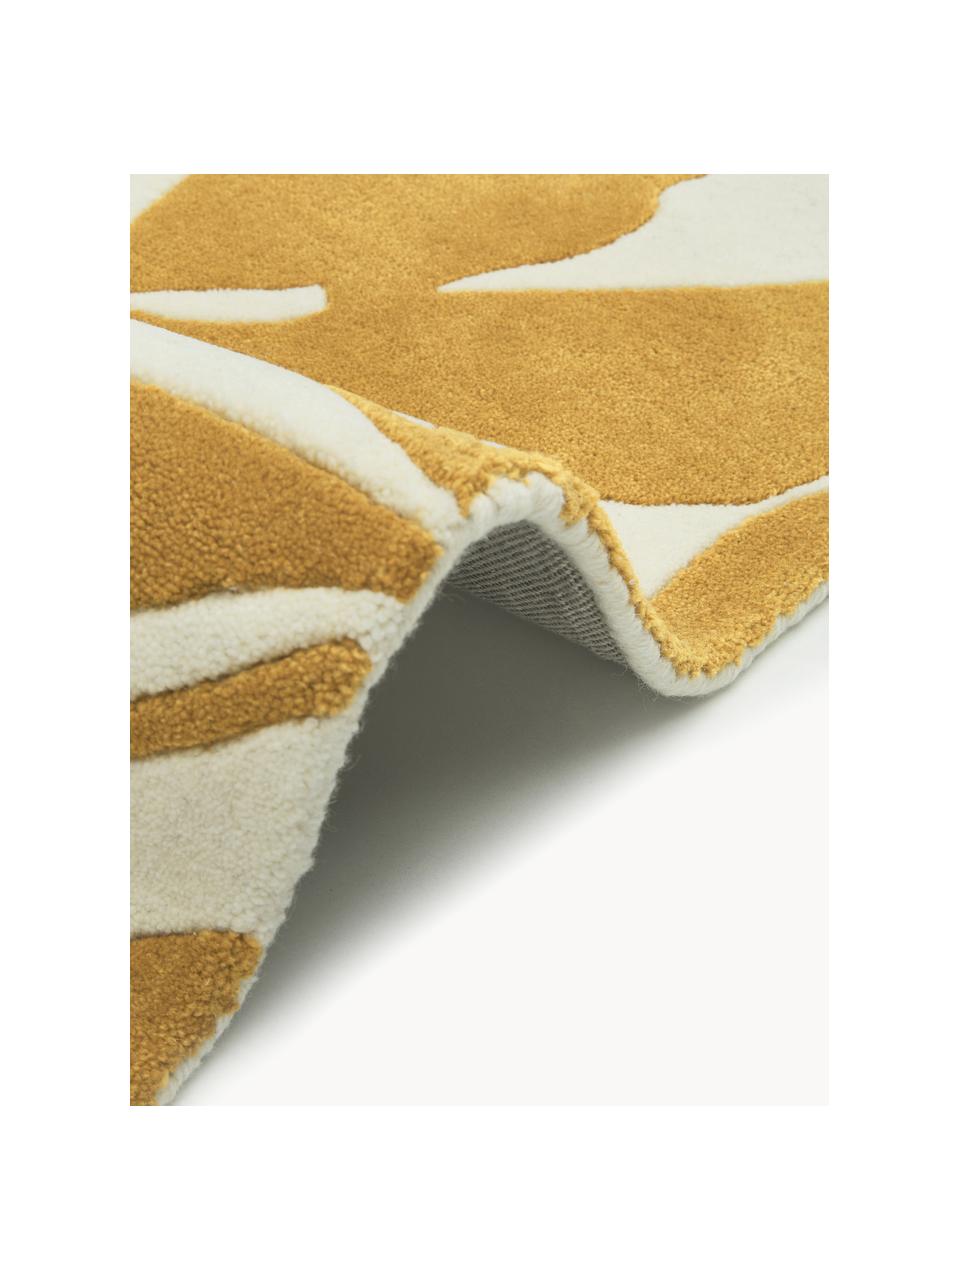 Ručně tkaný vlněný koberec Lando, 100 % vlna

V prvních týdnech používání vlněných koberců se může objevit charakteristický jev uvolňování vláken, který po několika týdnech používání ustane., Okrová žlutá, béžová, Š 80 cm, D 150 cm (velikost XS)